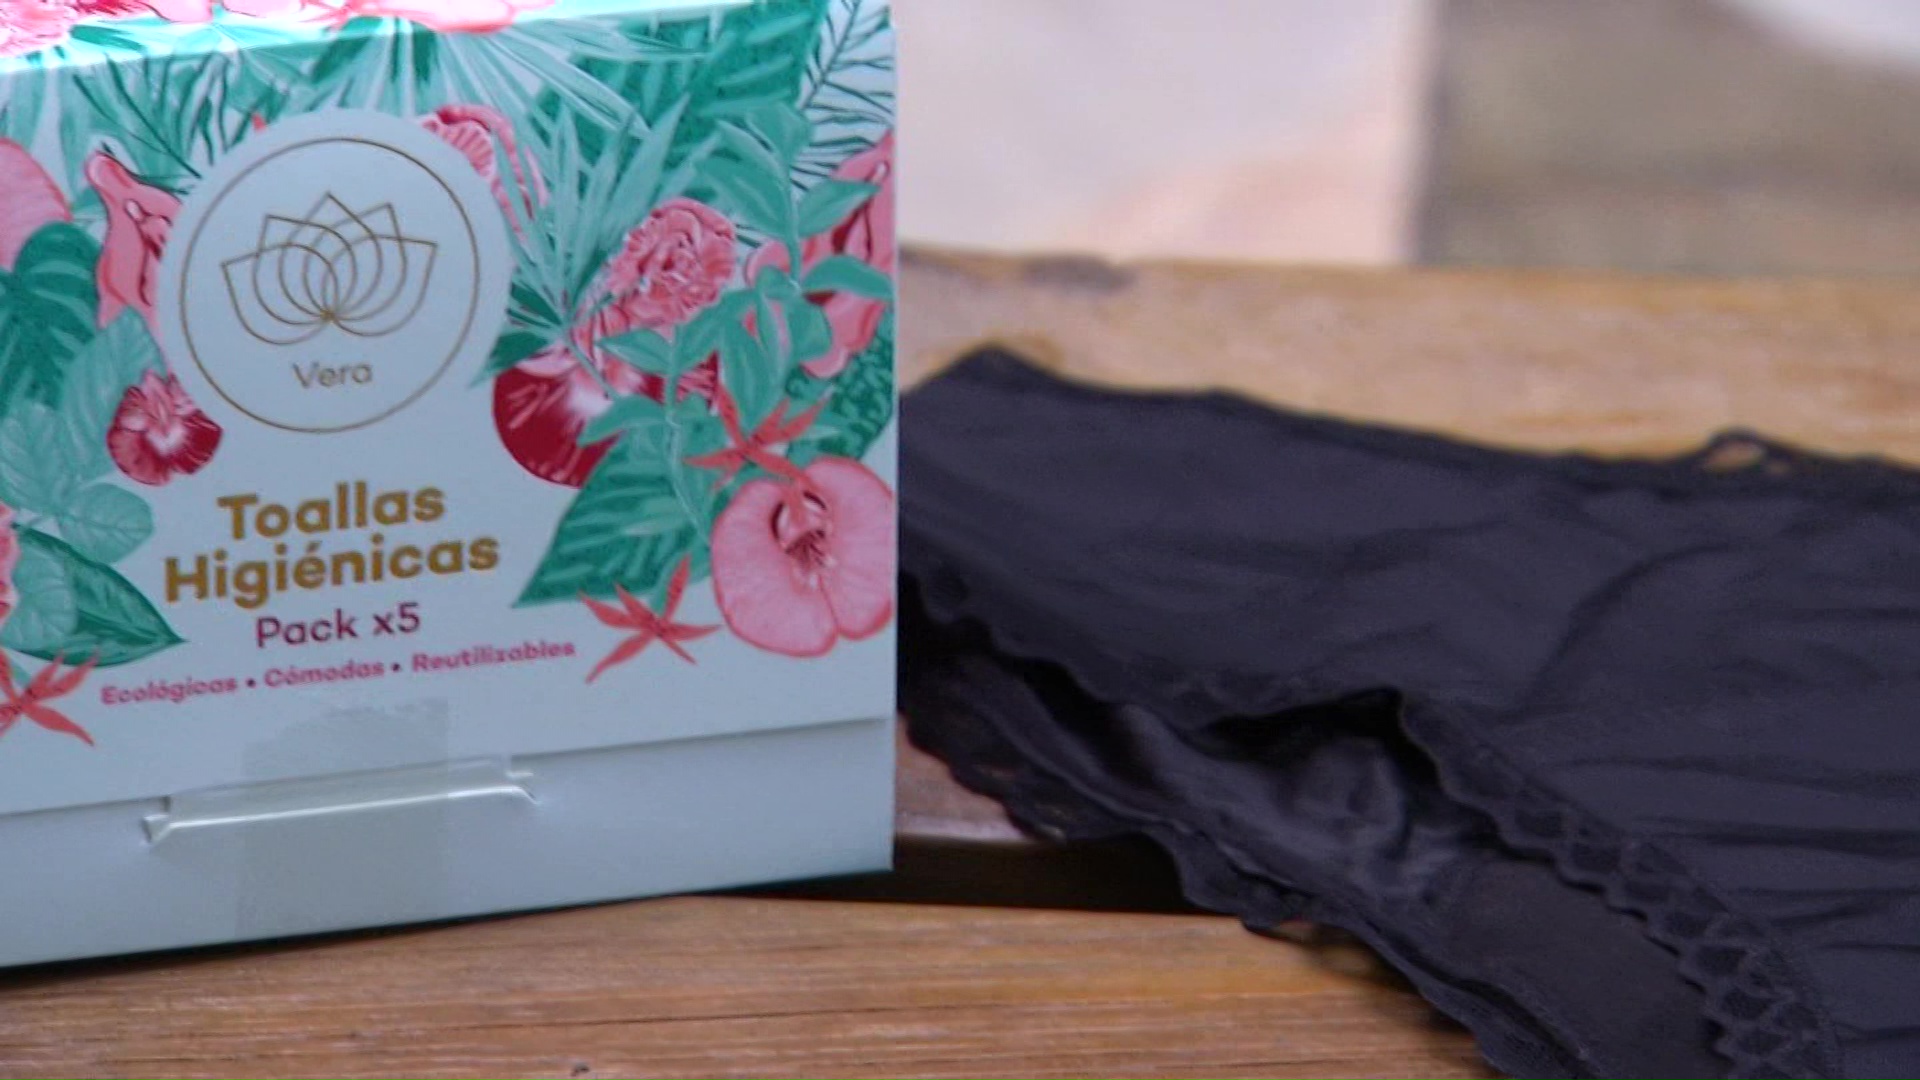 Comfama ofrecerá subsidio a mujeres por menstruación